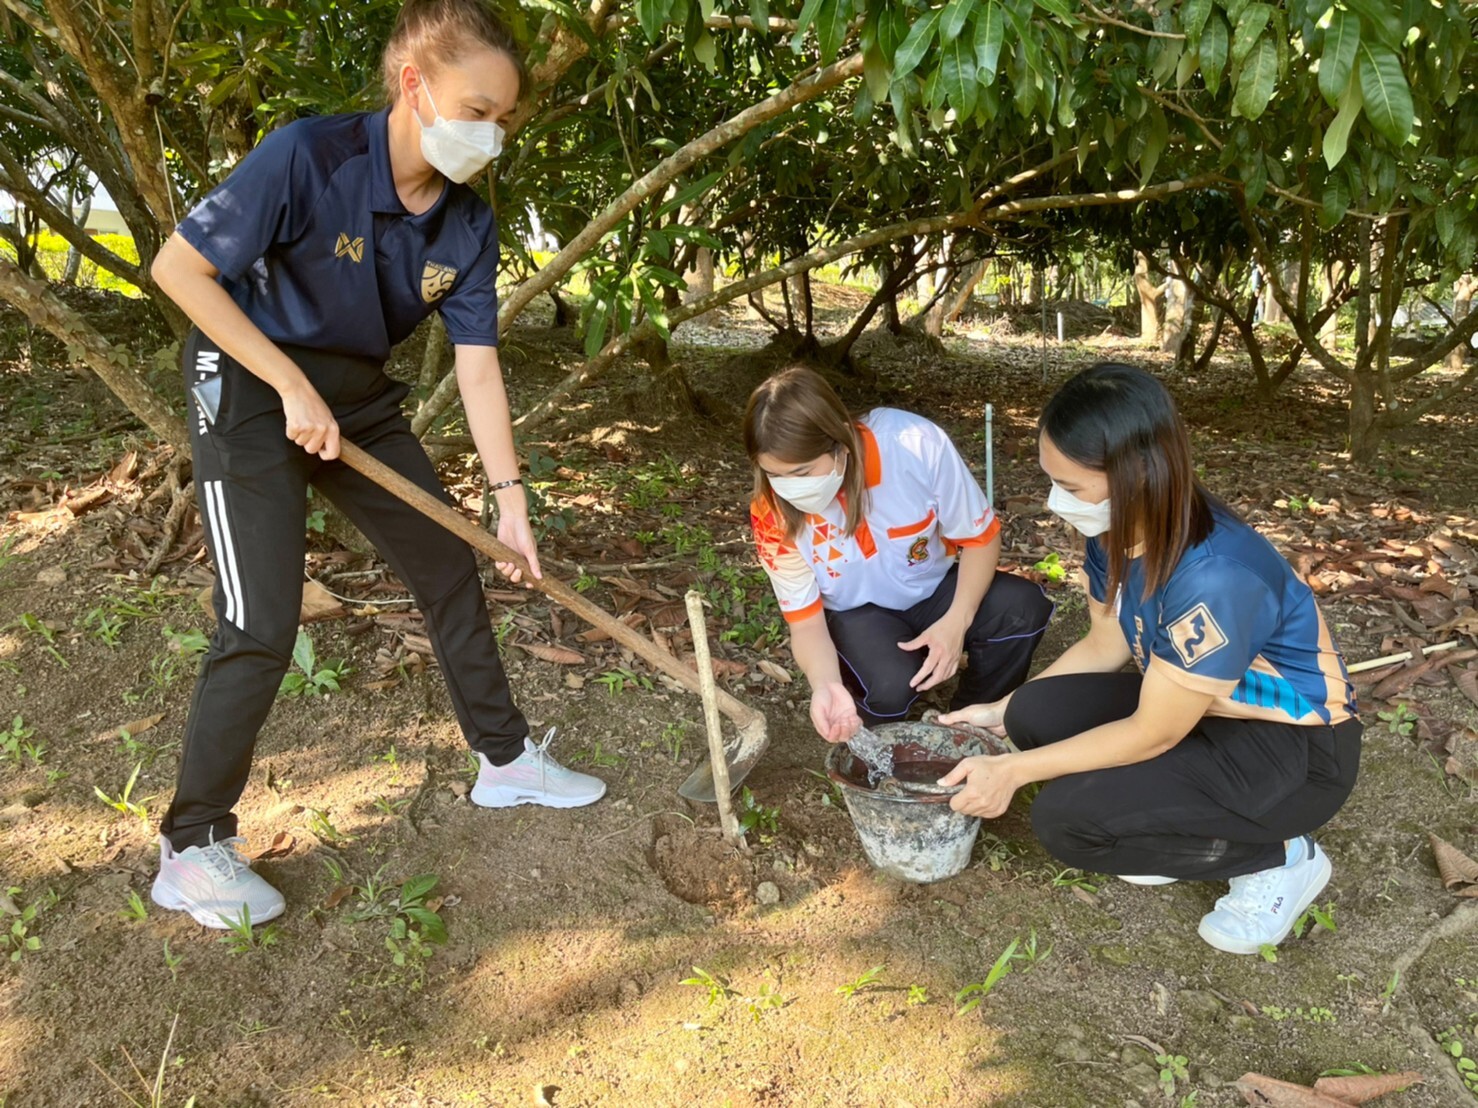 สำนักงานพัฒนาฝีมือแรงงานแม่ฮ่องสอน ร่วมกันบำรุงรักษาต้นไม้ด้วยการพรวนดิน ใส่ปุ๋ย ตัดแต่งกิ่งไม้ และรดน้ำต้นไม้ในพื้นที่ที่ได้ปลูกต้นไม้ เนื่องใน "วันรักต้นไม้ประจำปีของชาติ พ.ศ. 2564